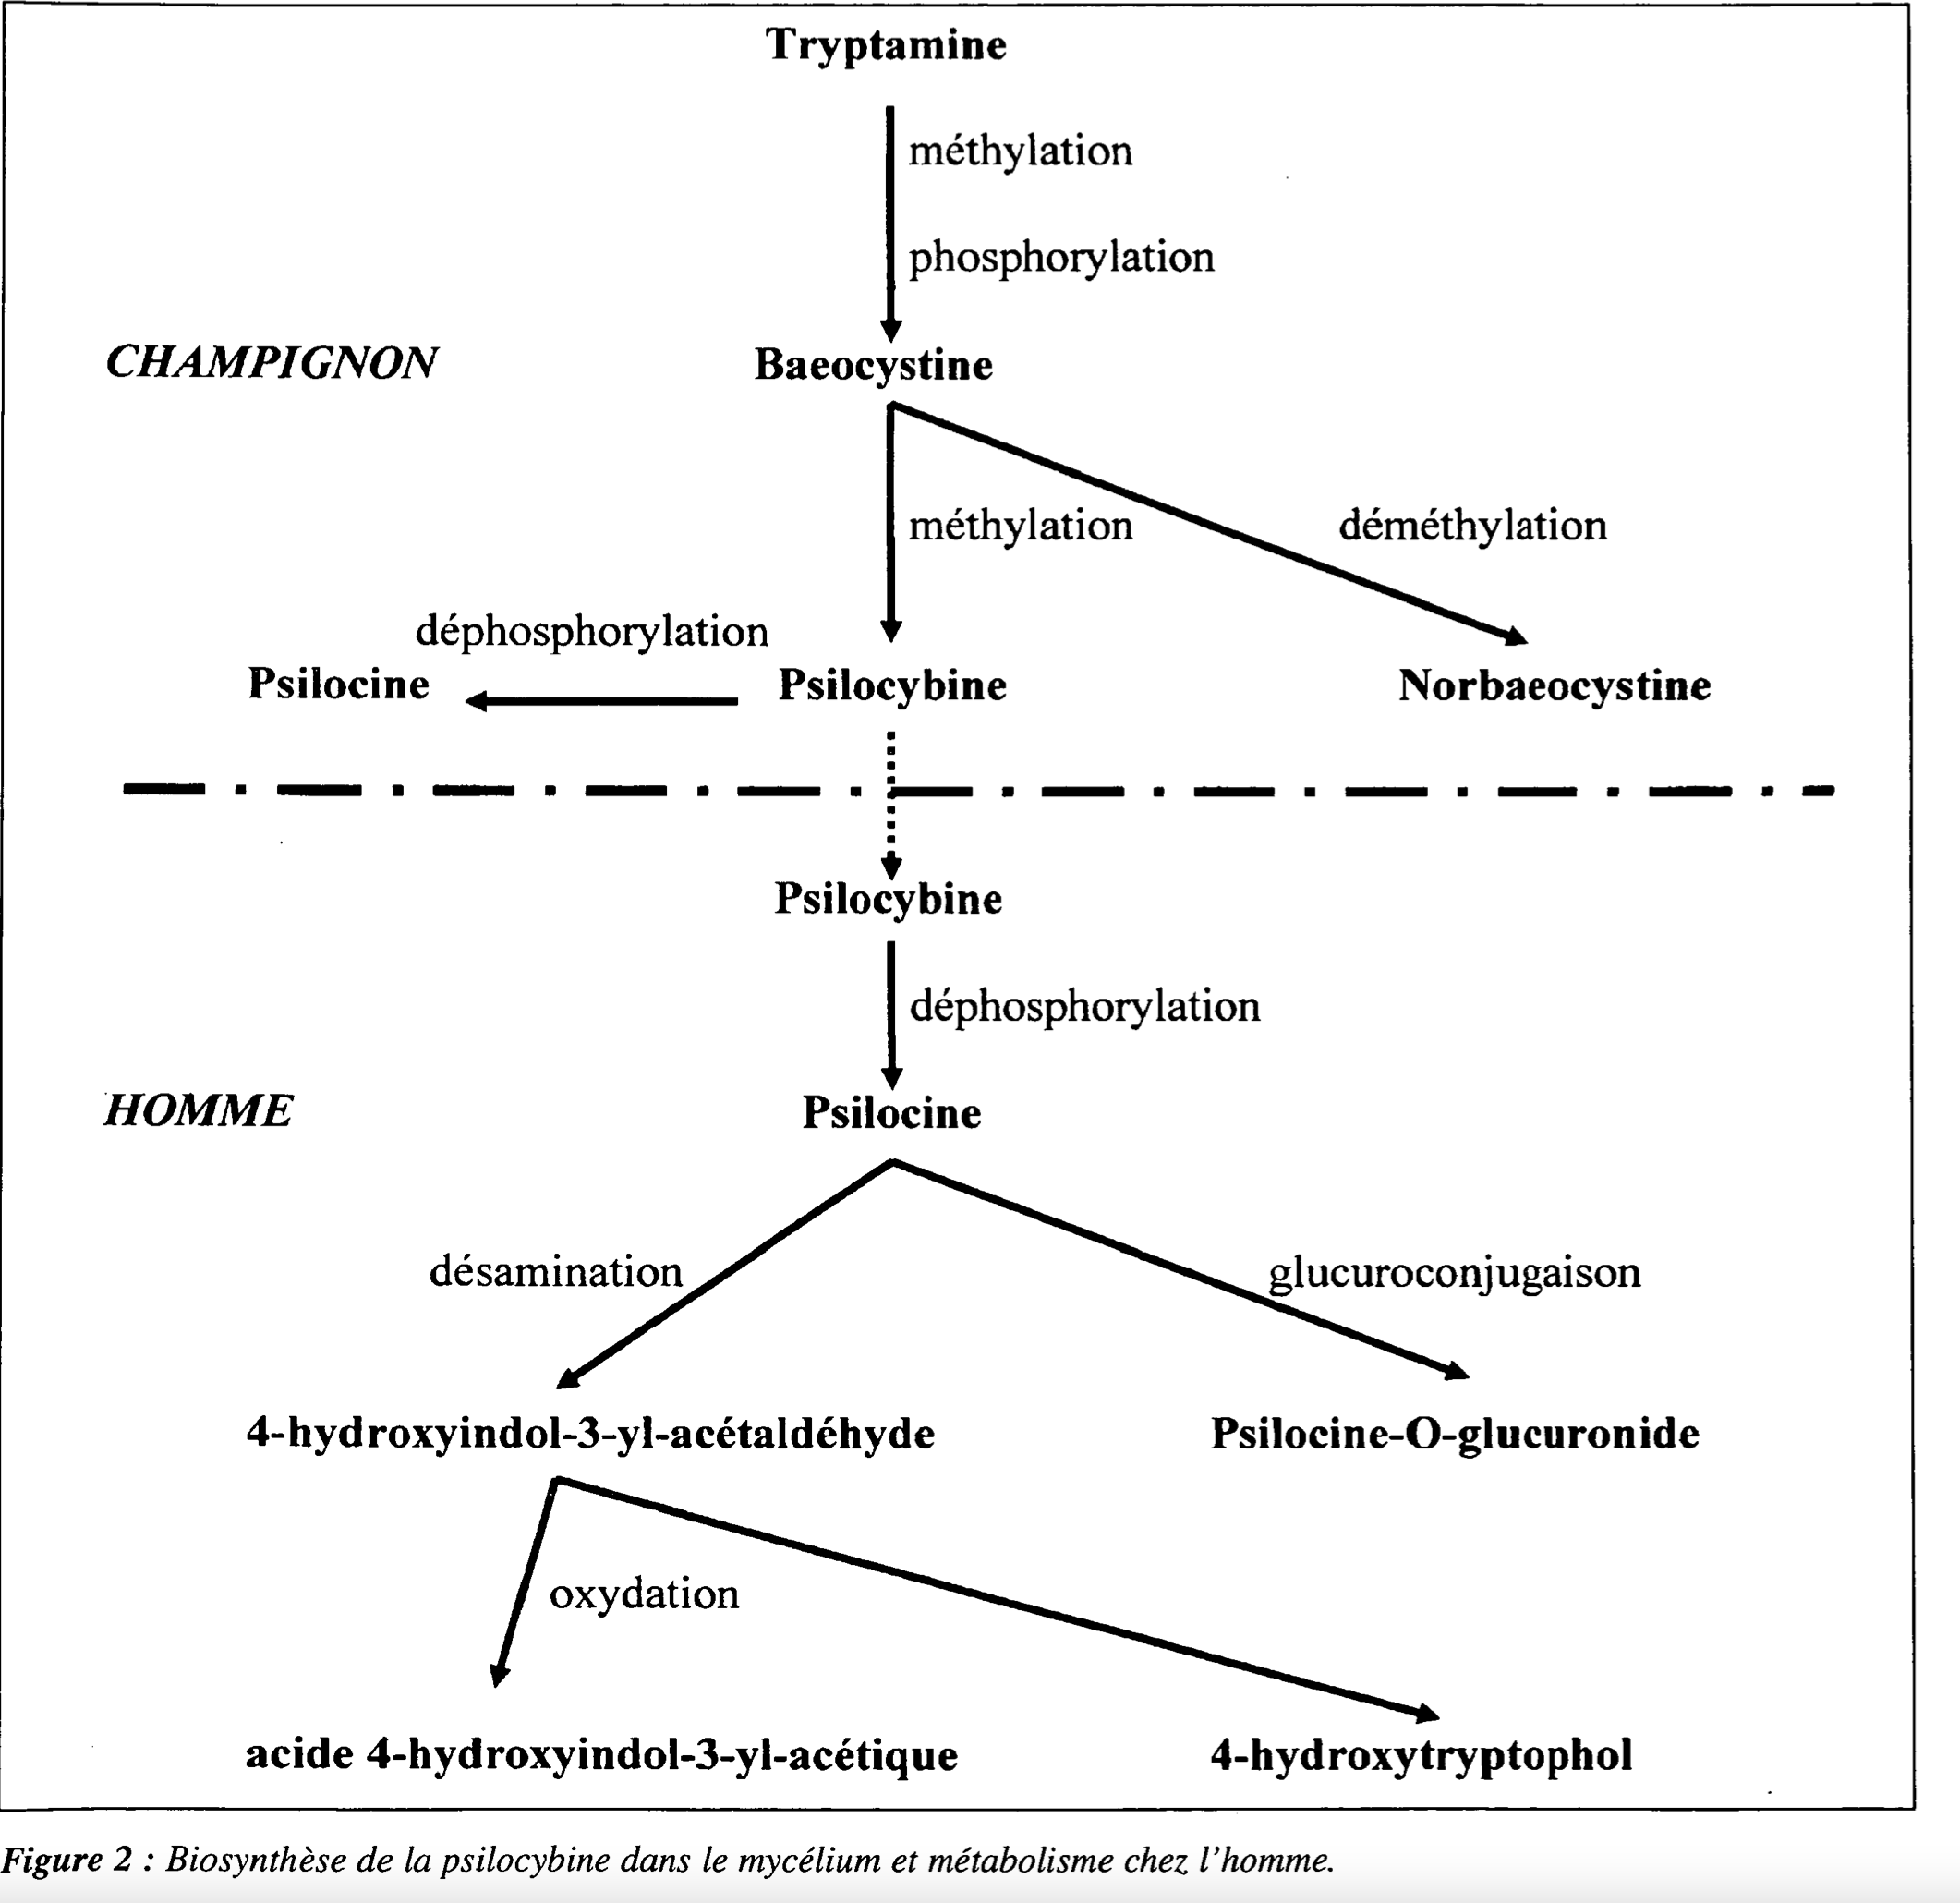 Biosintesi della psilocibina nel micellium e metabolismo nell'uomo (trasformazione in psilocina). Illustrazione tratta dagli Annales de Toxicologie Analytique, Vol XVI n. 1, p 39